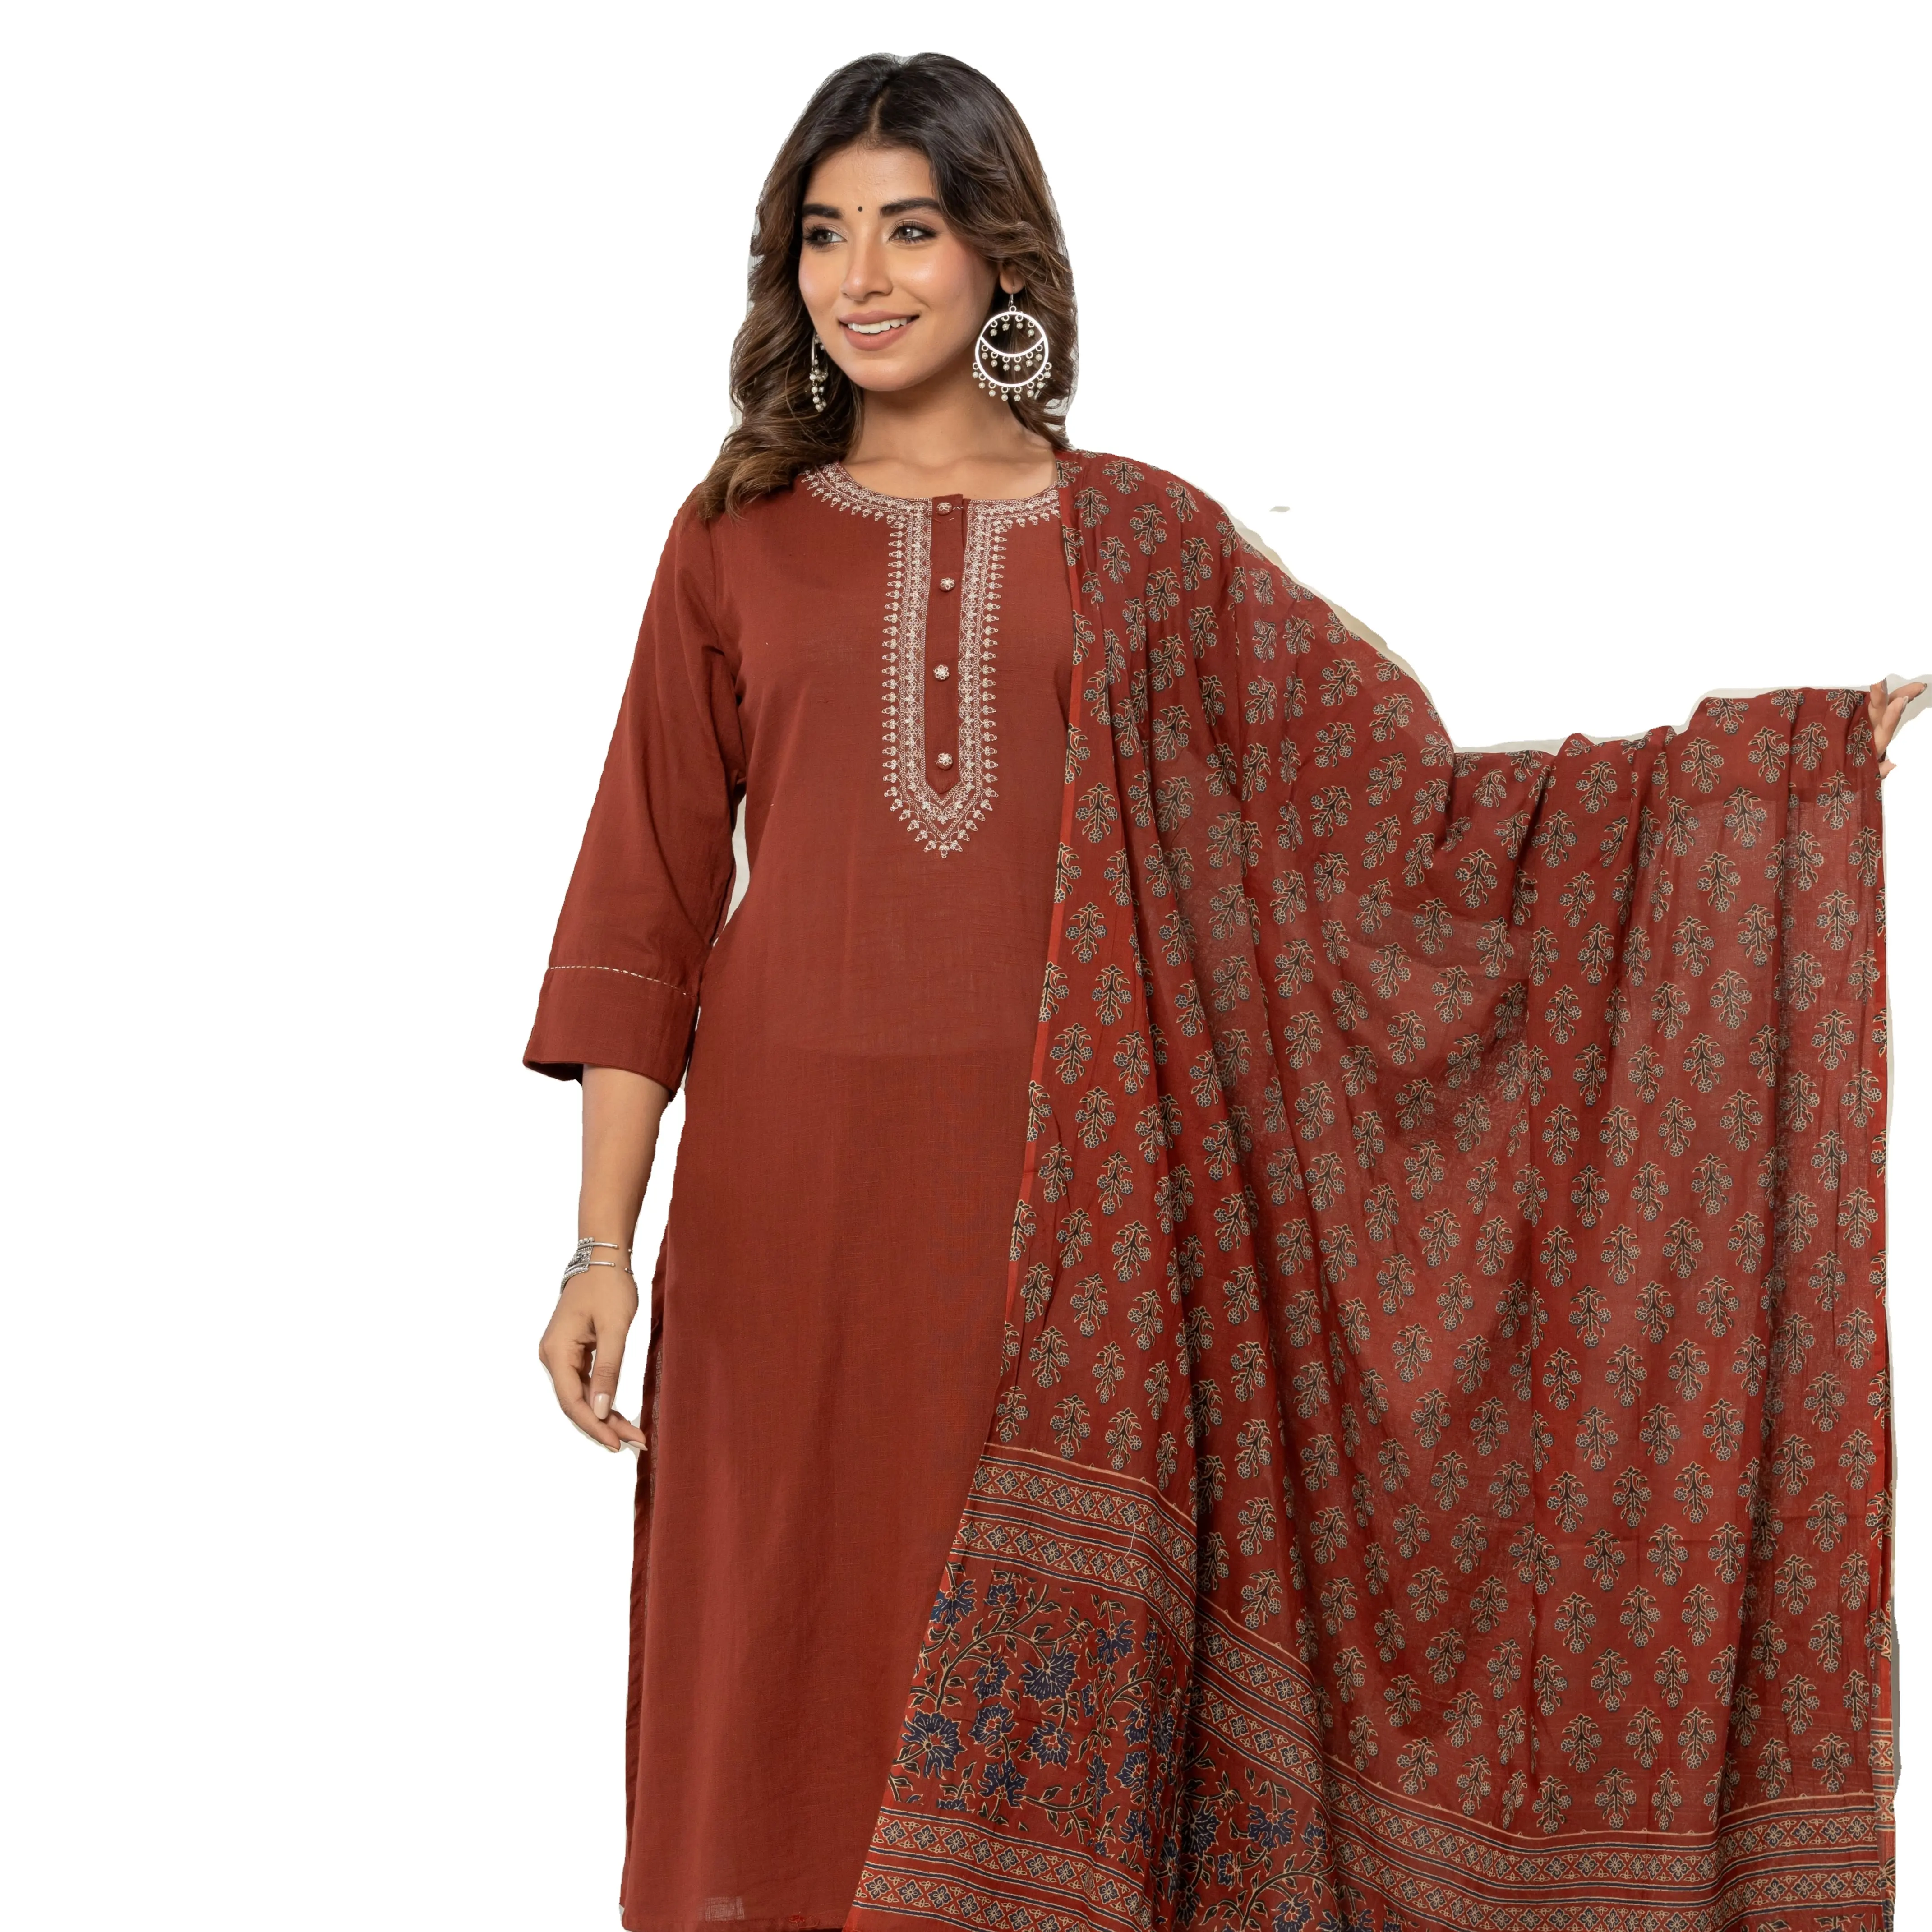 Qualité d'exportation Premium pour femmes couleur marron pur coton solide A-ligne Kurta prix de gros de l'Inde fait à la main produit en vrac OEM